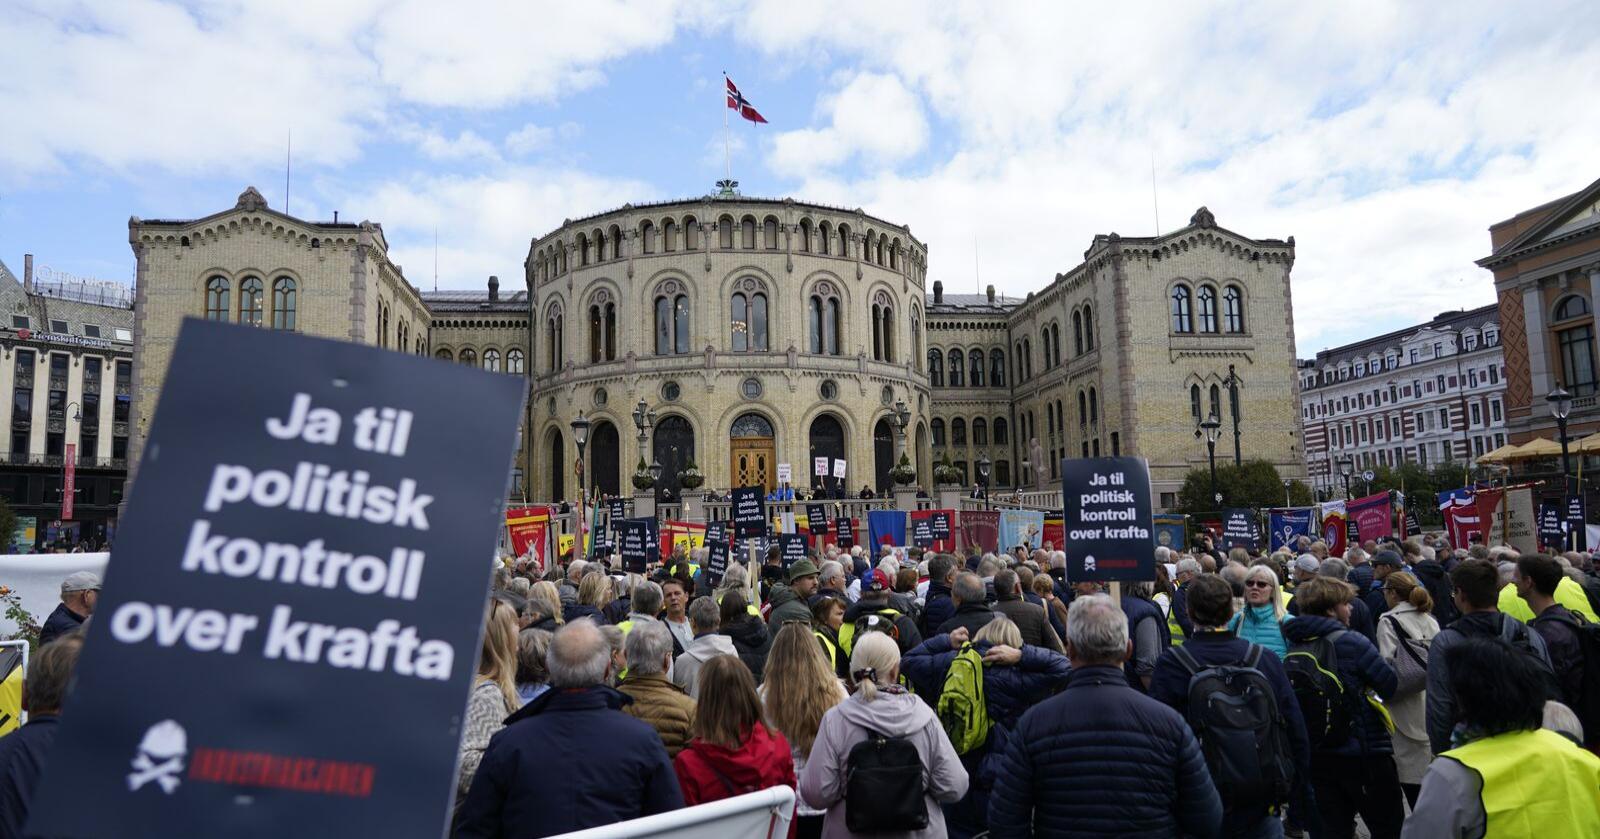 Industriaksjonen demonstrerte foran Stortinget mandag mens politikerne inne i salen slåss om å vise handlekraft i møtet med høye strømpriser og kraftkrise. Foto: Gorm Kallestad / NTB